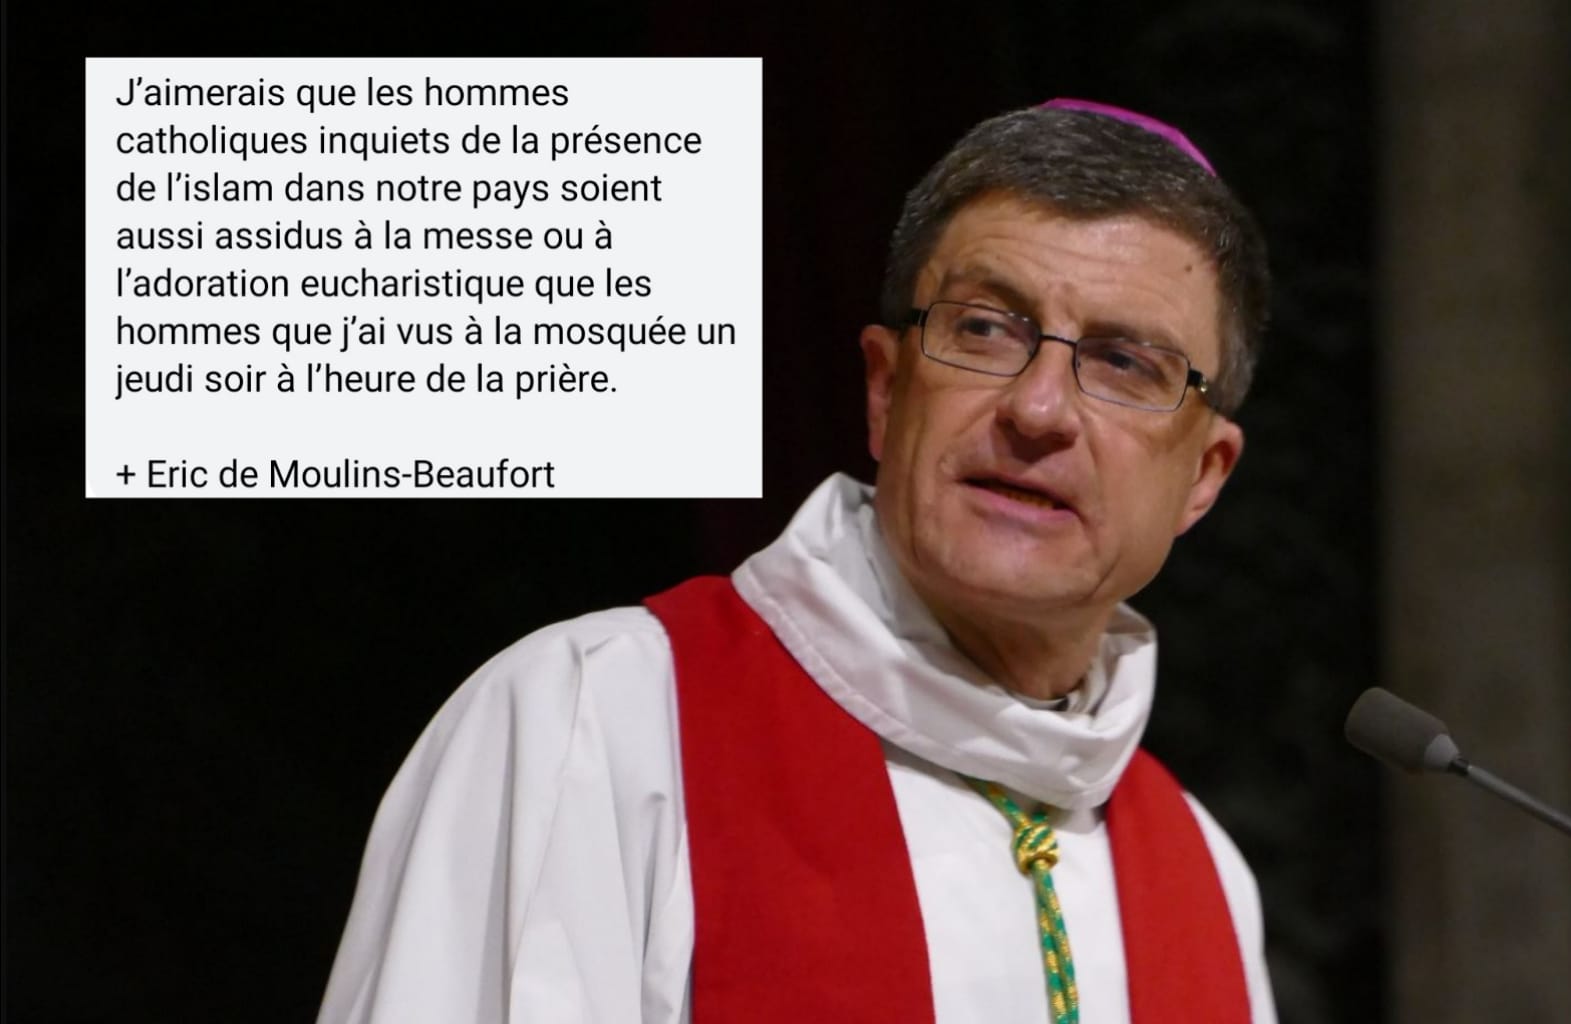 La réponse cinglante de l'archevêque de Reims à ceux qui ont critiqué sa présence dans une mosquée